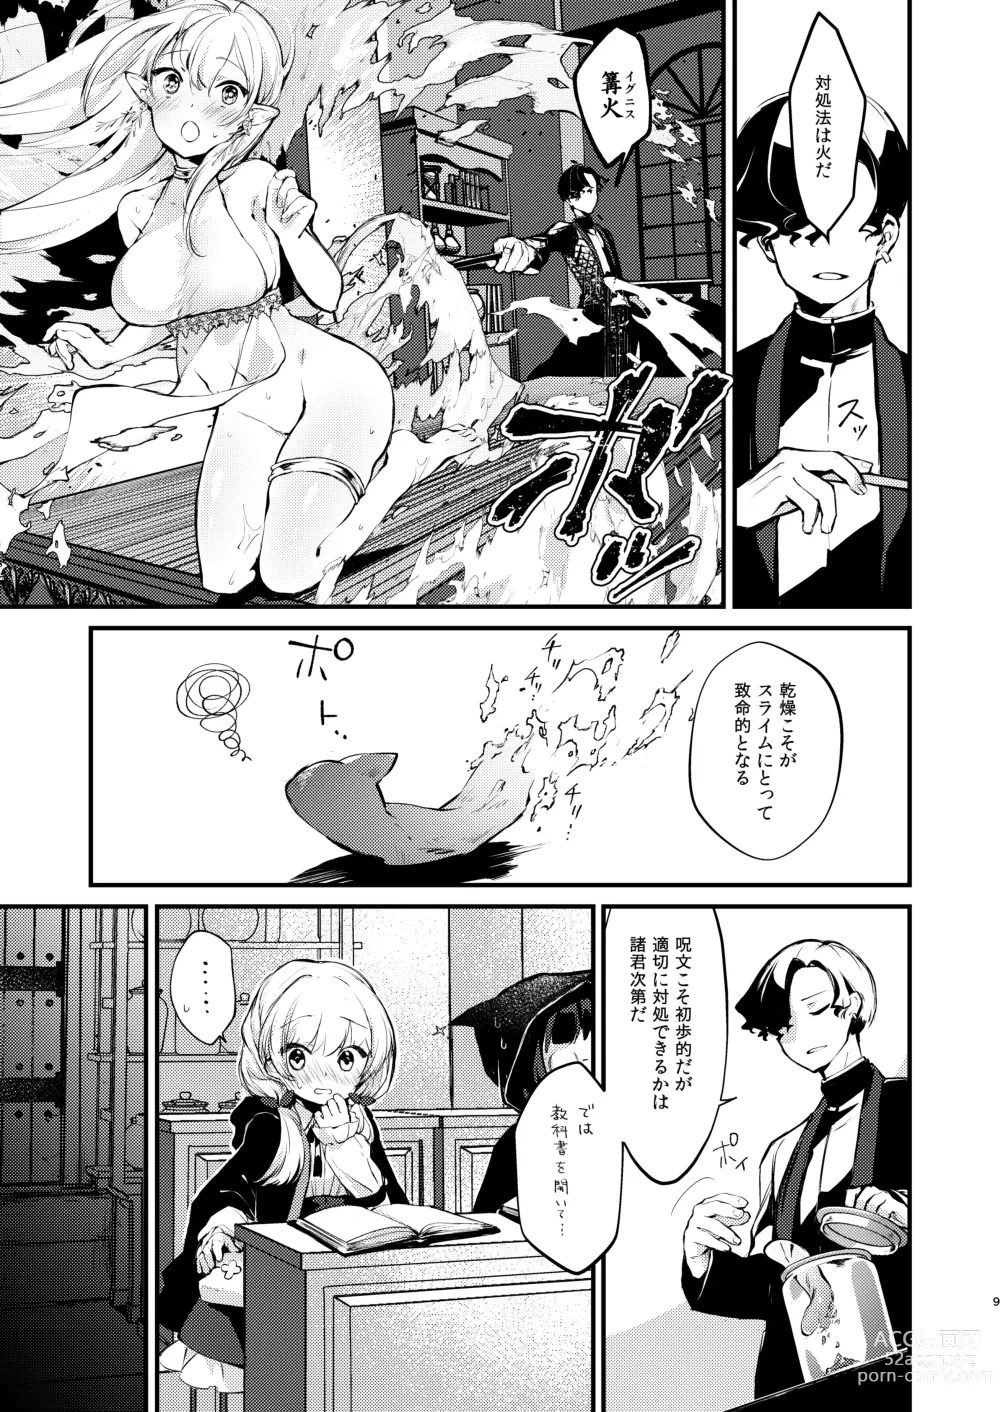 Page 8 of doujinshi Himitsu no Tomodachi - The Secret Friend